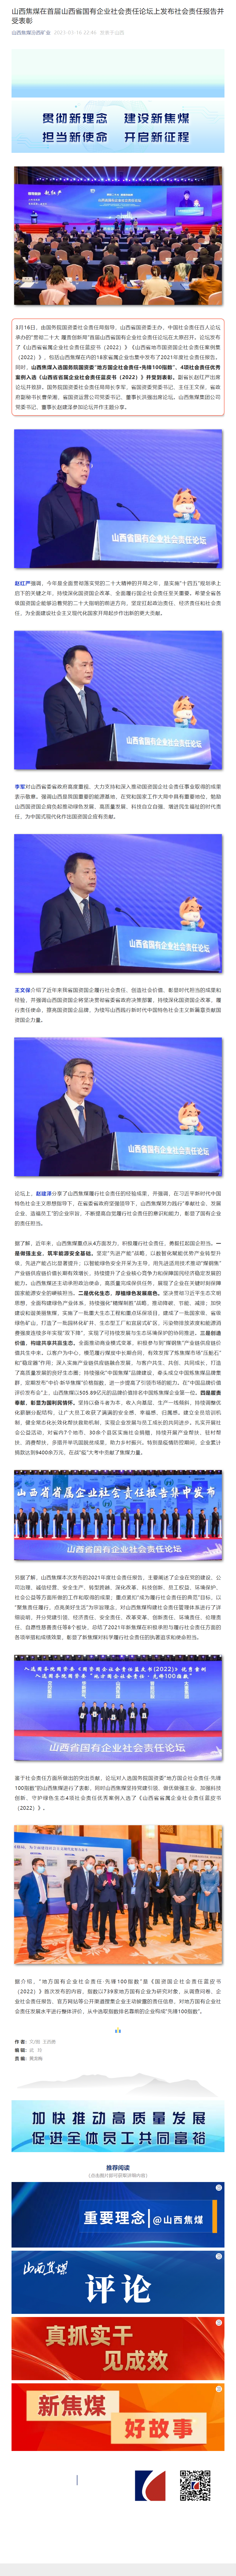 山西焦煤在首届山西省国有企业社会责任论坛上发布社会责任报告并受表彰.png